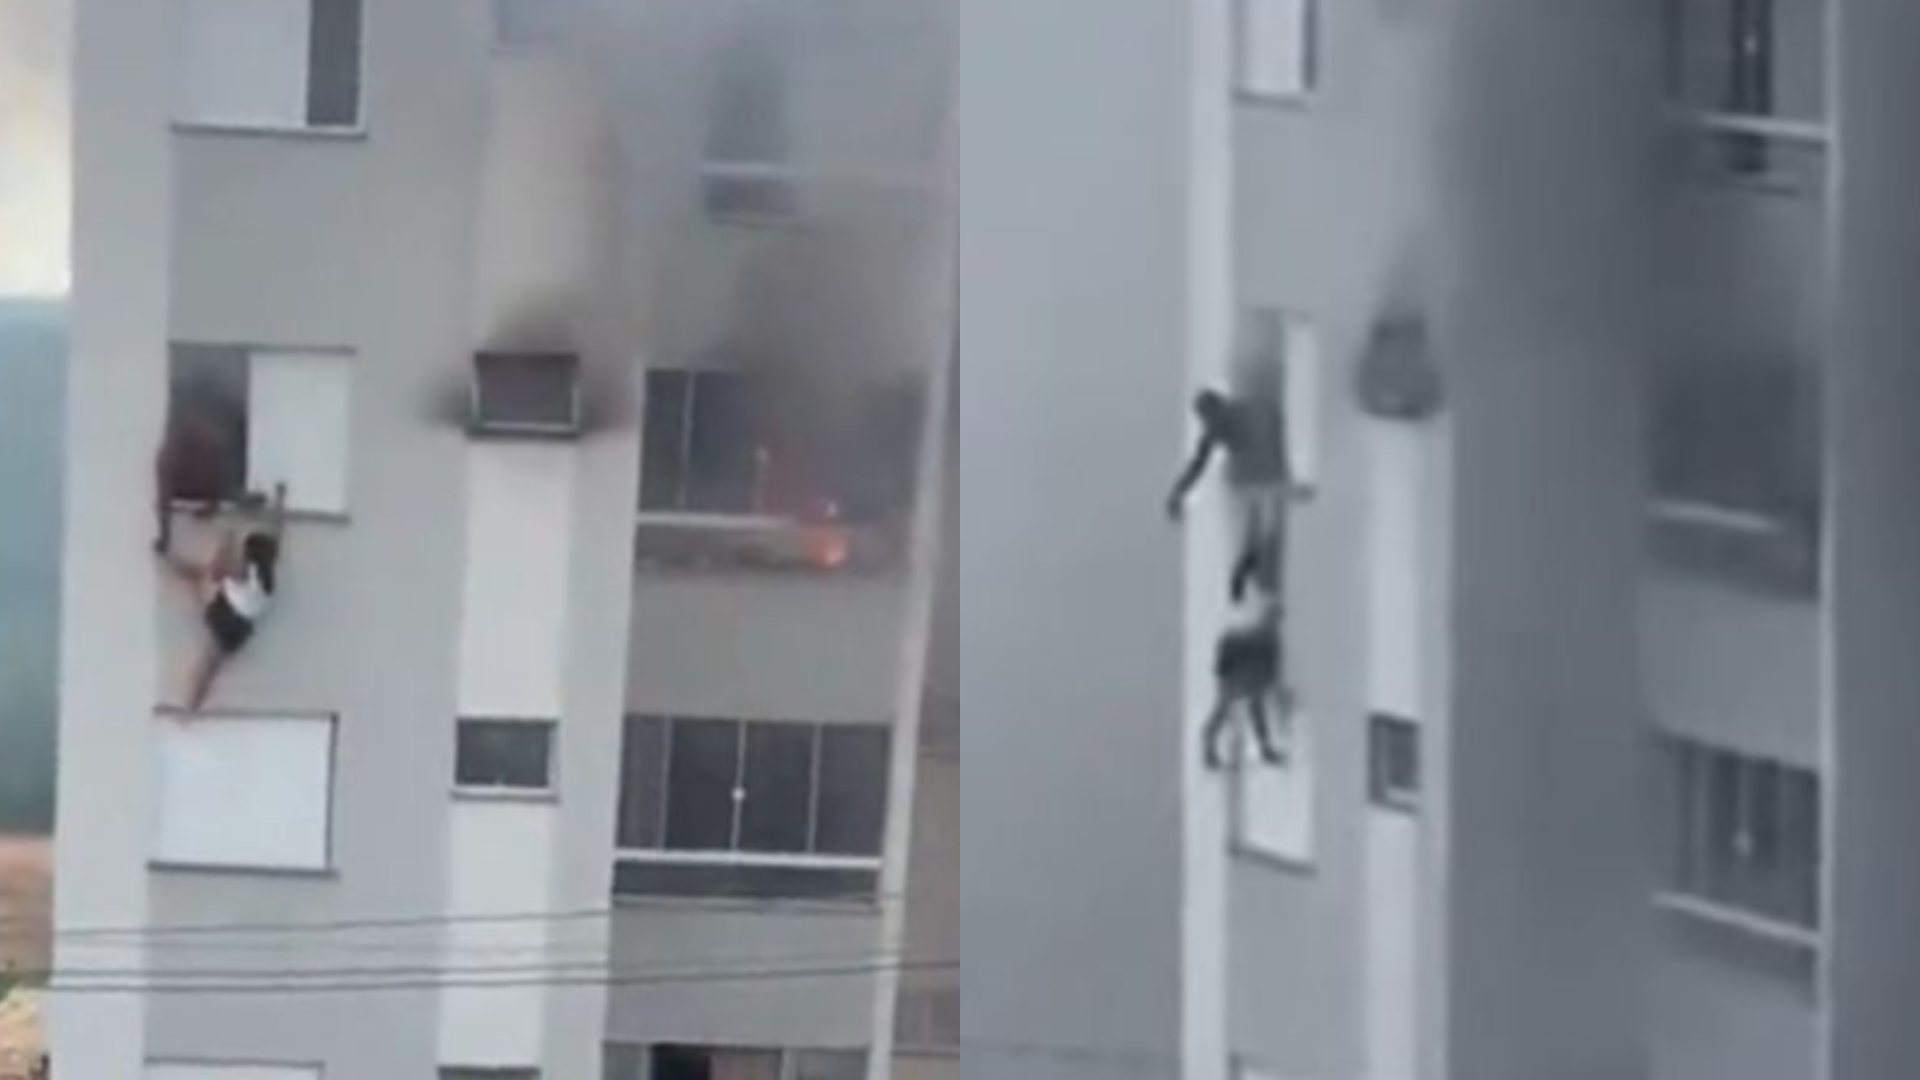 Avô que pulou da janela após neta atear fogo em apartamento diz ter perdoado criança: “Meu xodó”